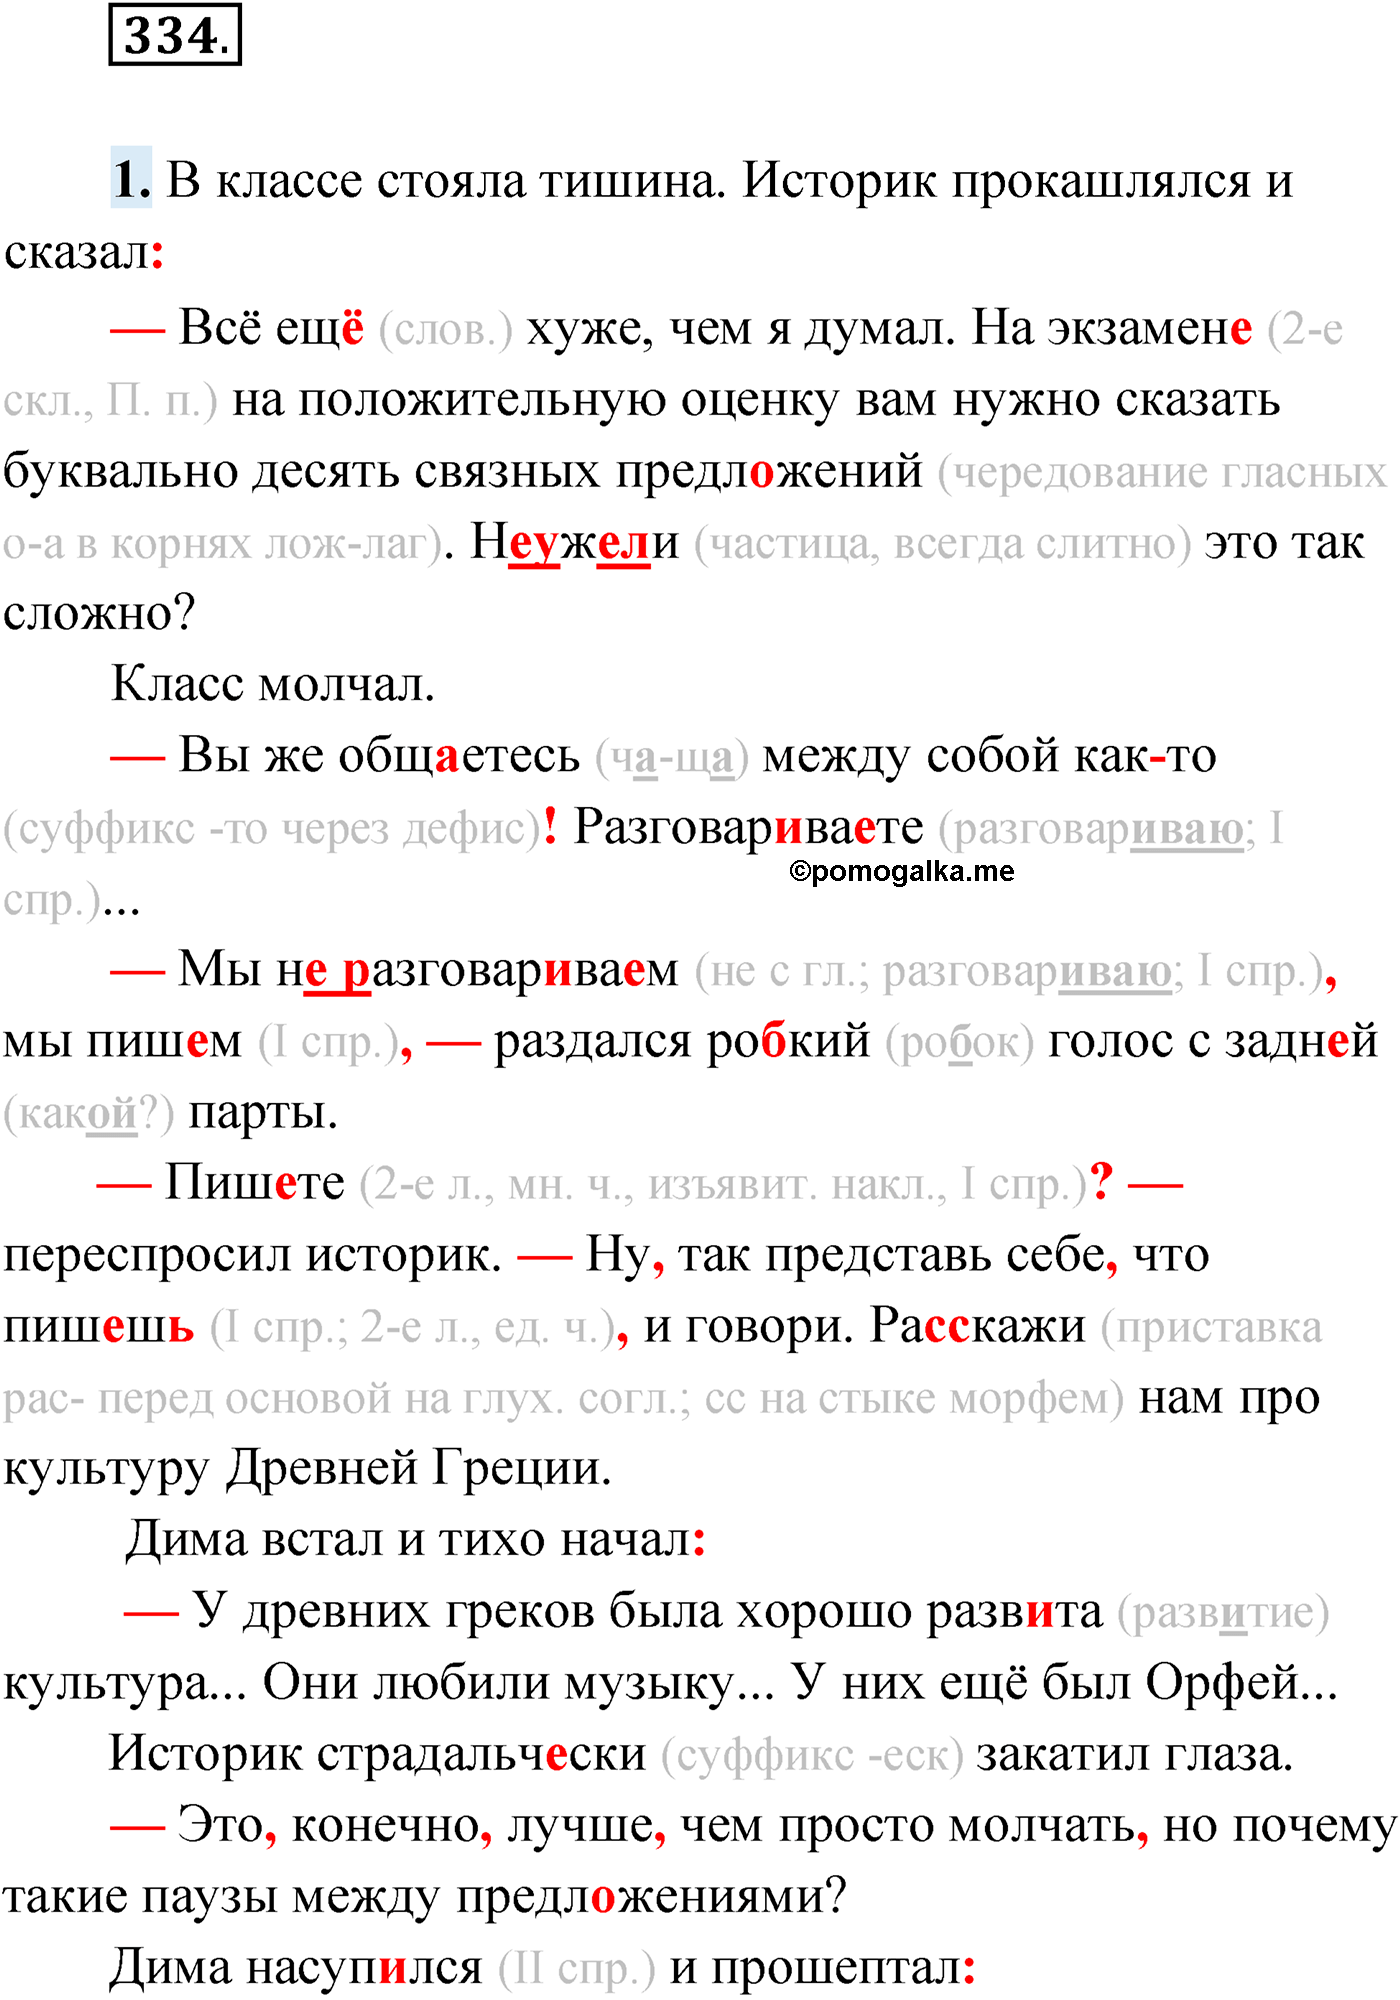 упражнение №334 русский язык 9 класс Мурина 2019 год